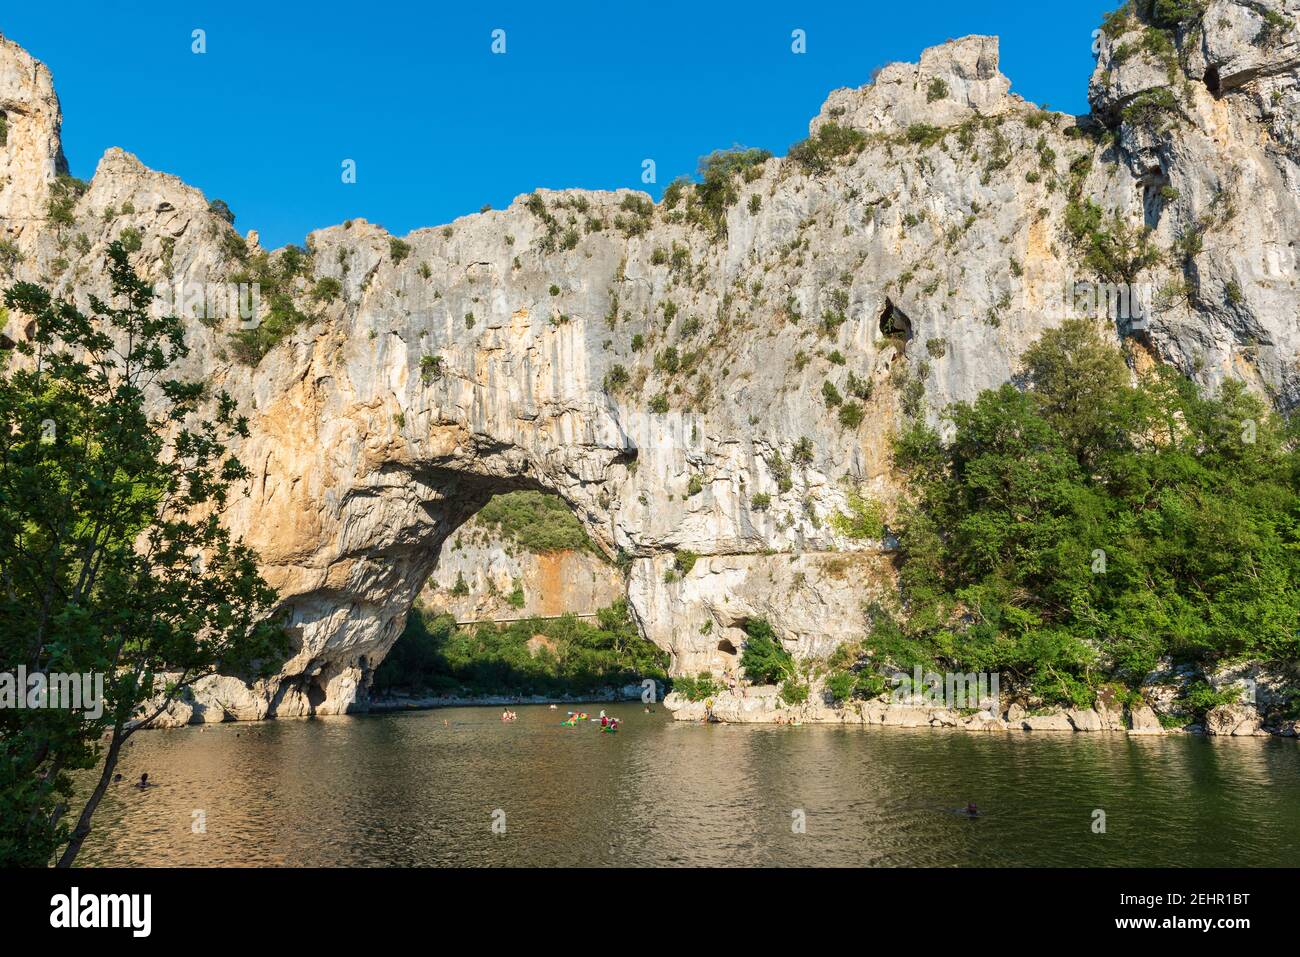 Le Pont d'Arc dans les Gorges de l'Ardèche, Vallon-Pont-d'Arc, France, été Banque D'Images